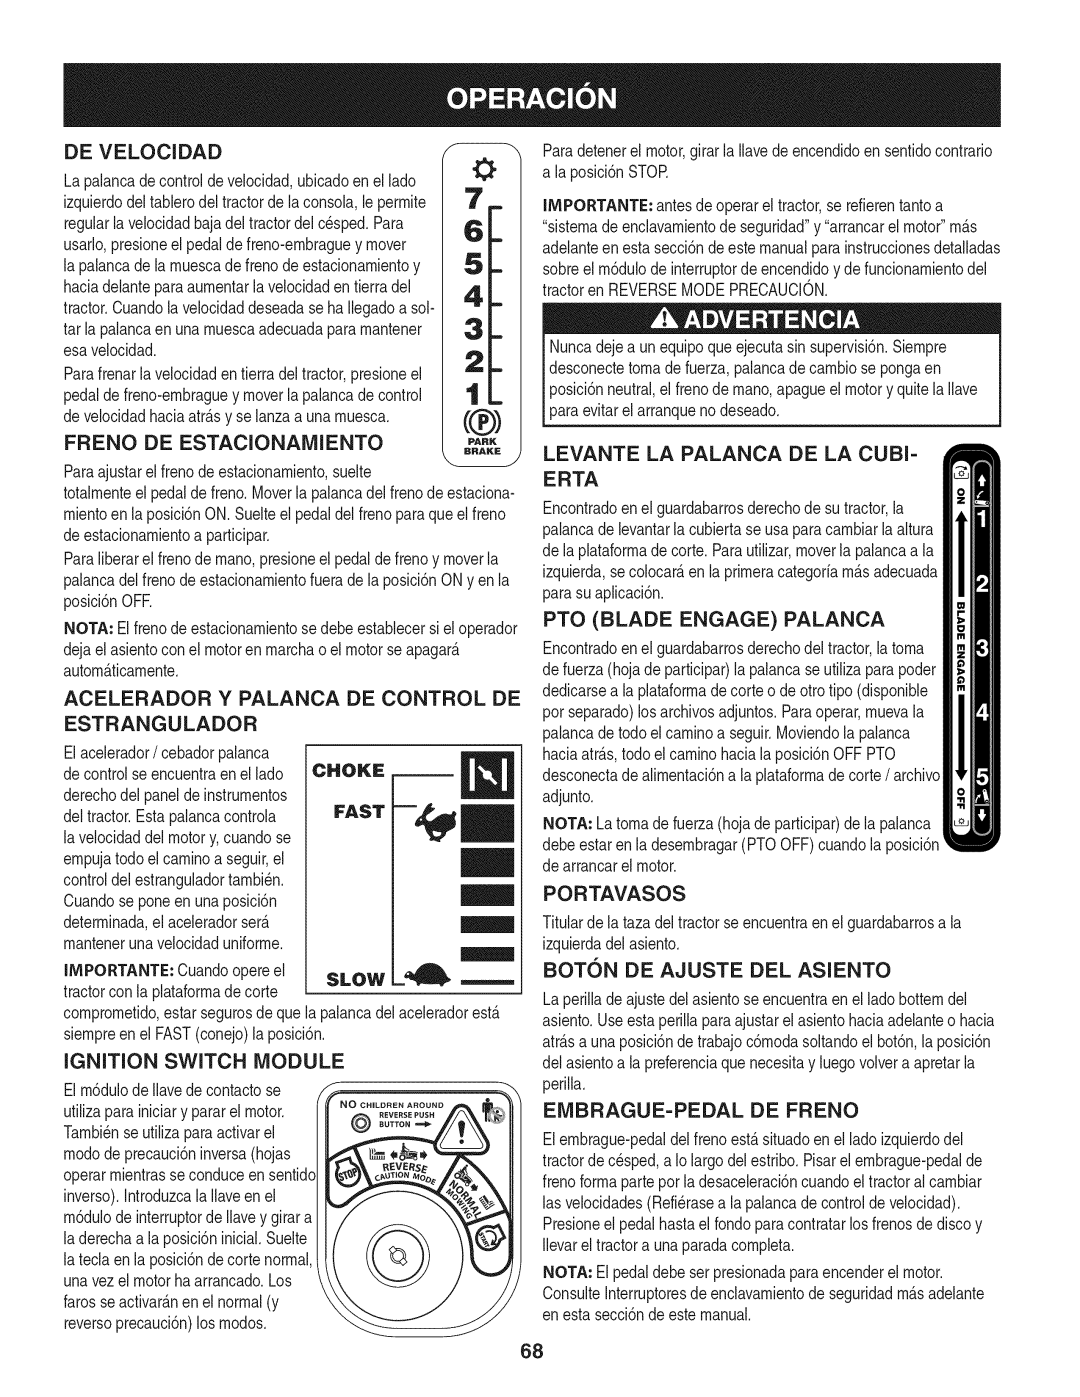 Craftsman 247.28901 manual Acelerador Y Palanca De Control De, Levante La Palanca De La Cubi, Portavasos 